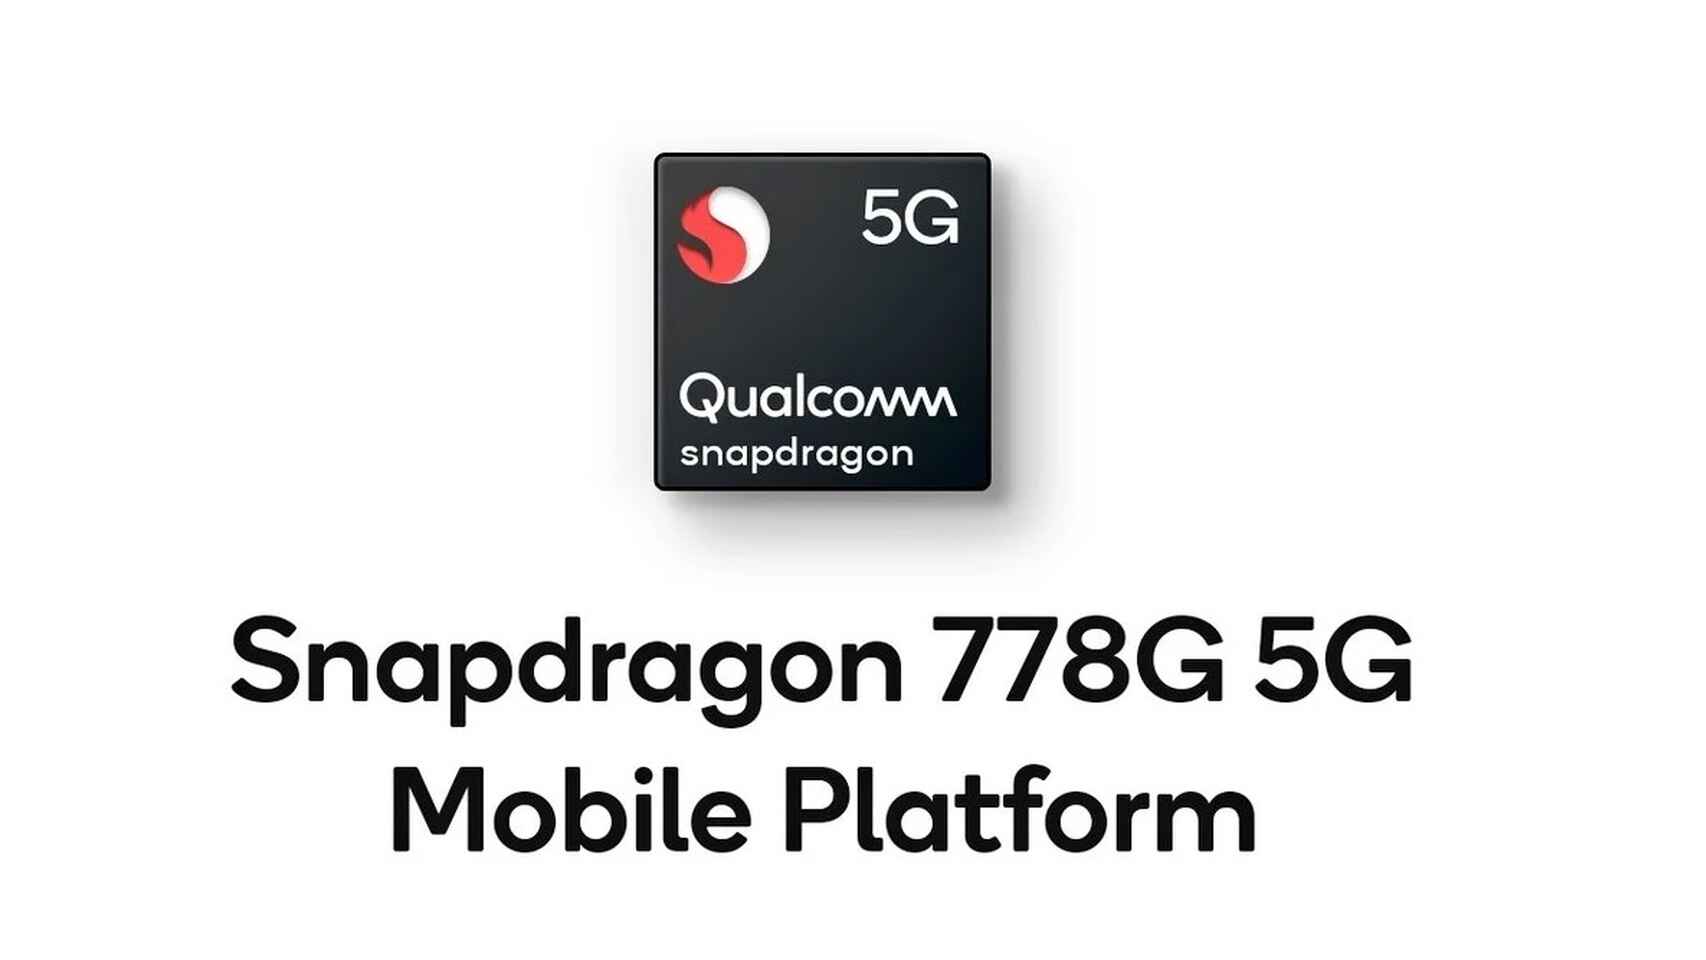 Motorola anunció que incluirá la plataforma móvil 778 5G de Qualcomm en nuestro portafolio, brindando experiencias nuevas